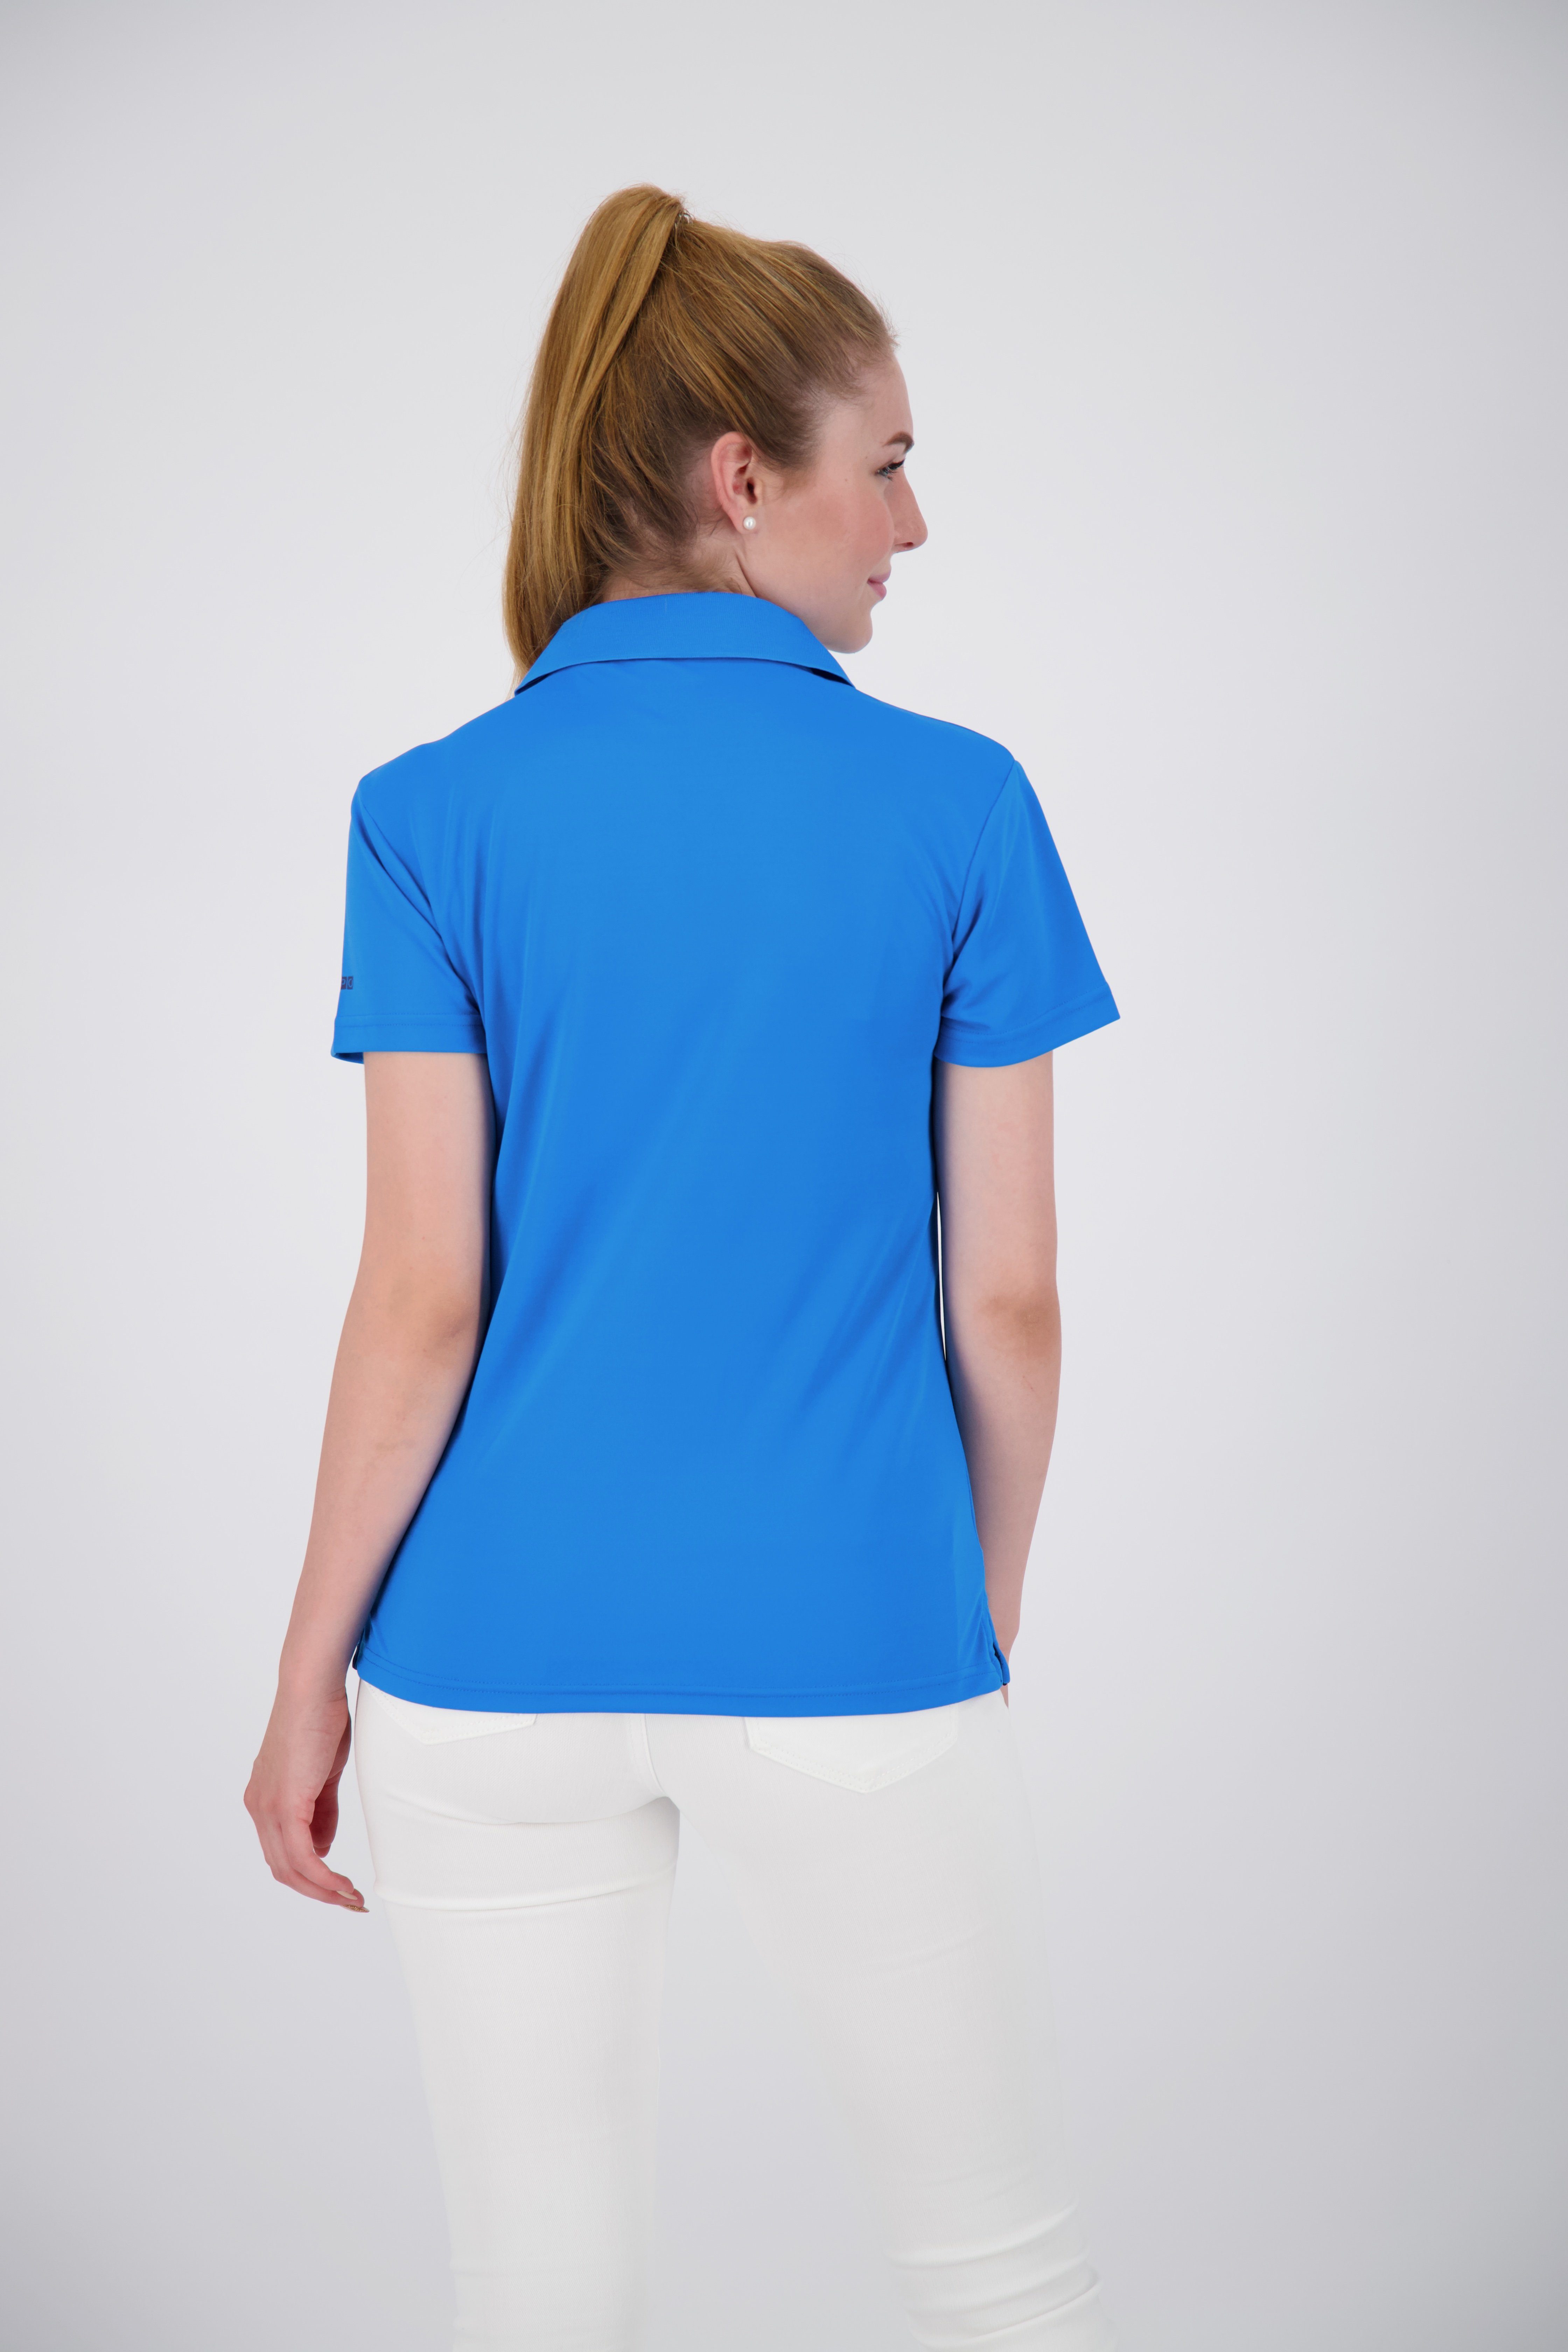 Recycling 3F-Funktions-Piqué DEPROC Active WOMEN Kunstfaser 100% aus Poloshirt II NEW HEDLEY light blue